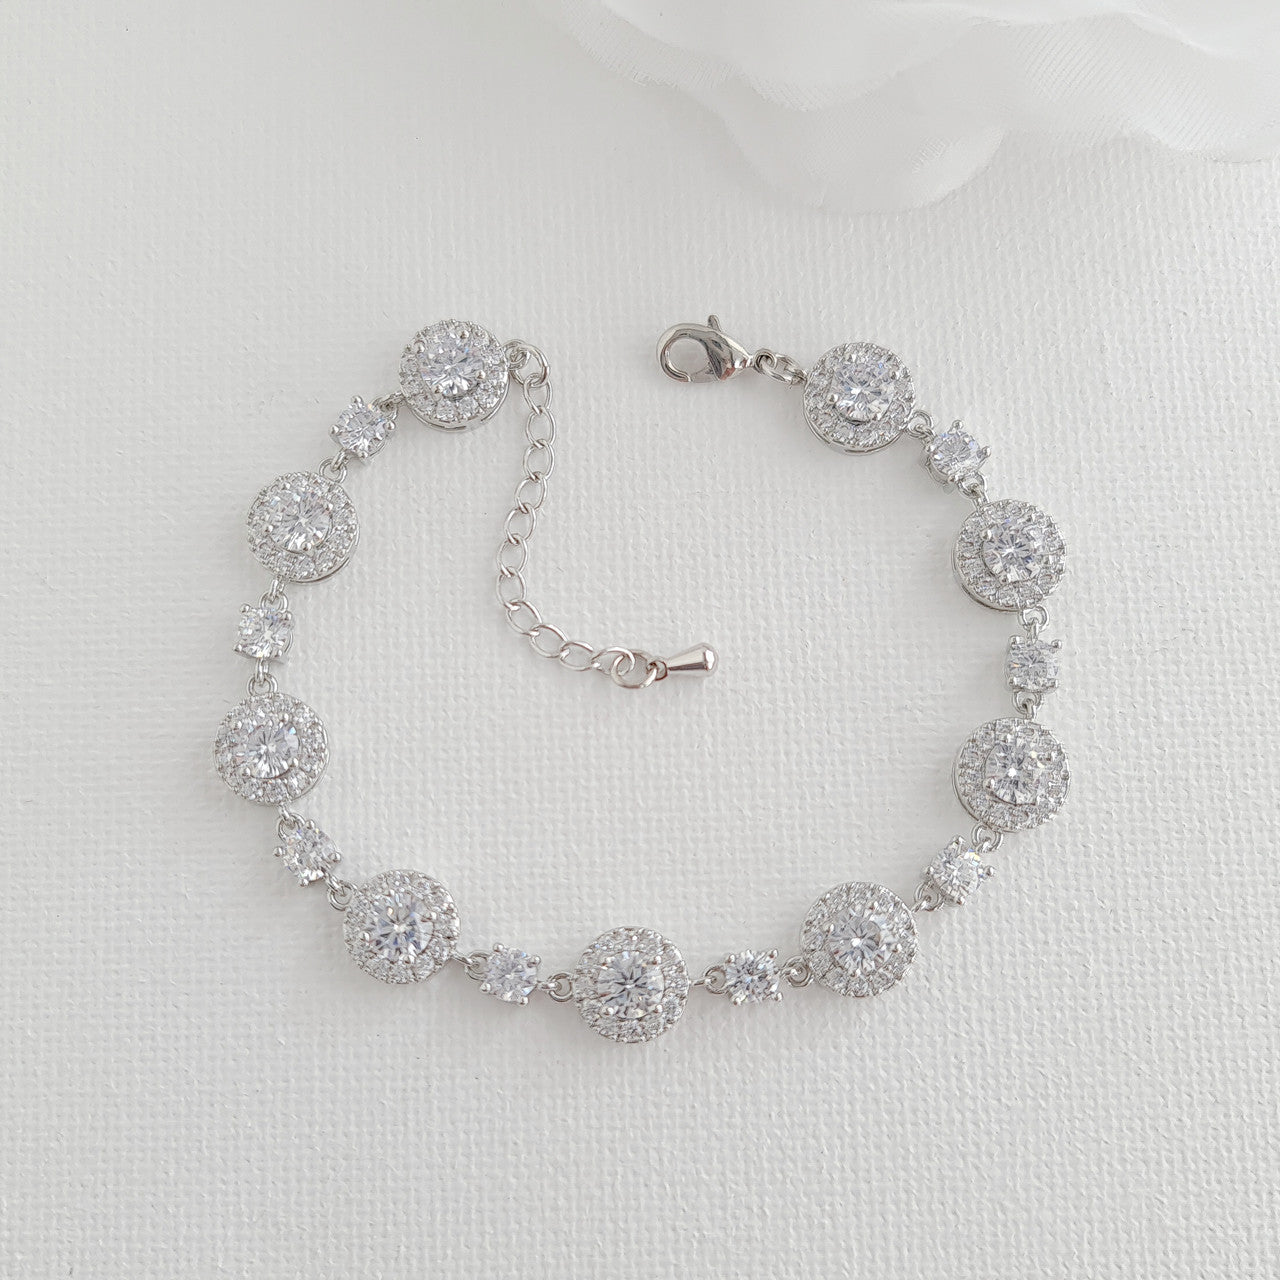 Wedding Bracelet Gift For Brides Matching Round Wedding Rings-Reagan